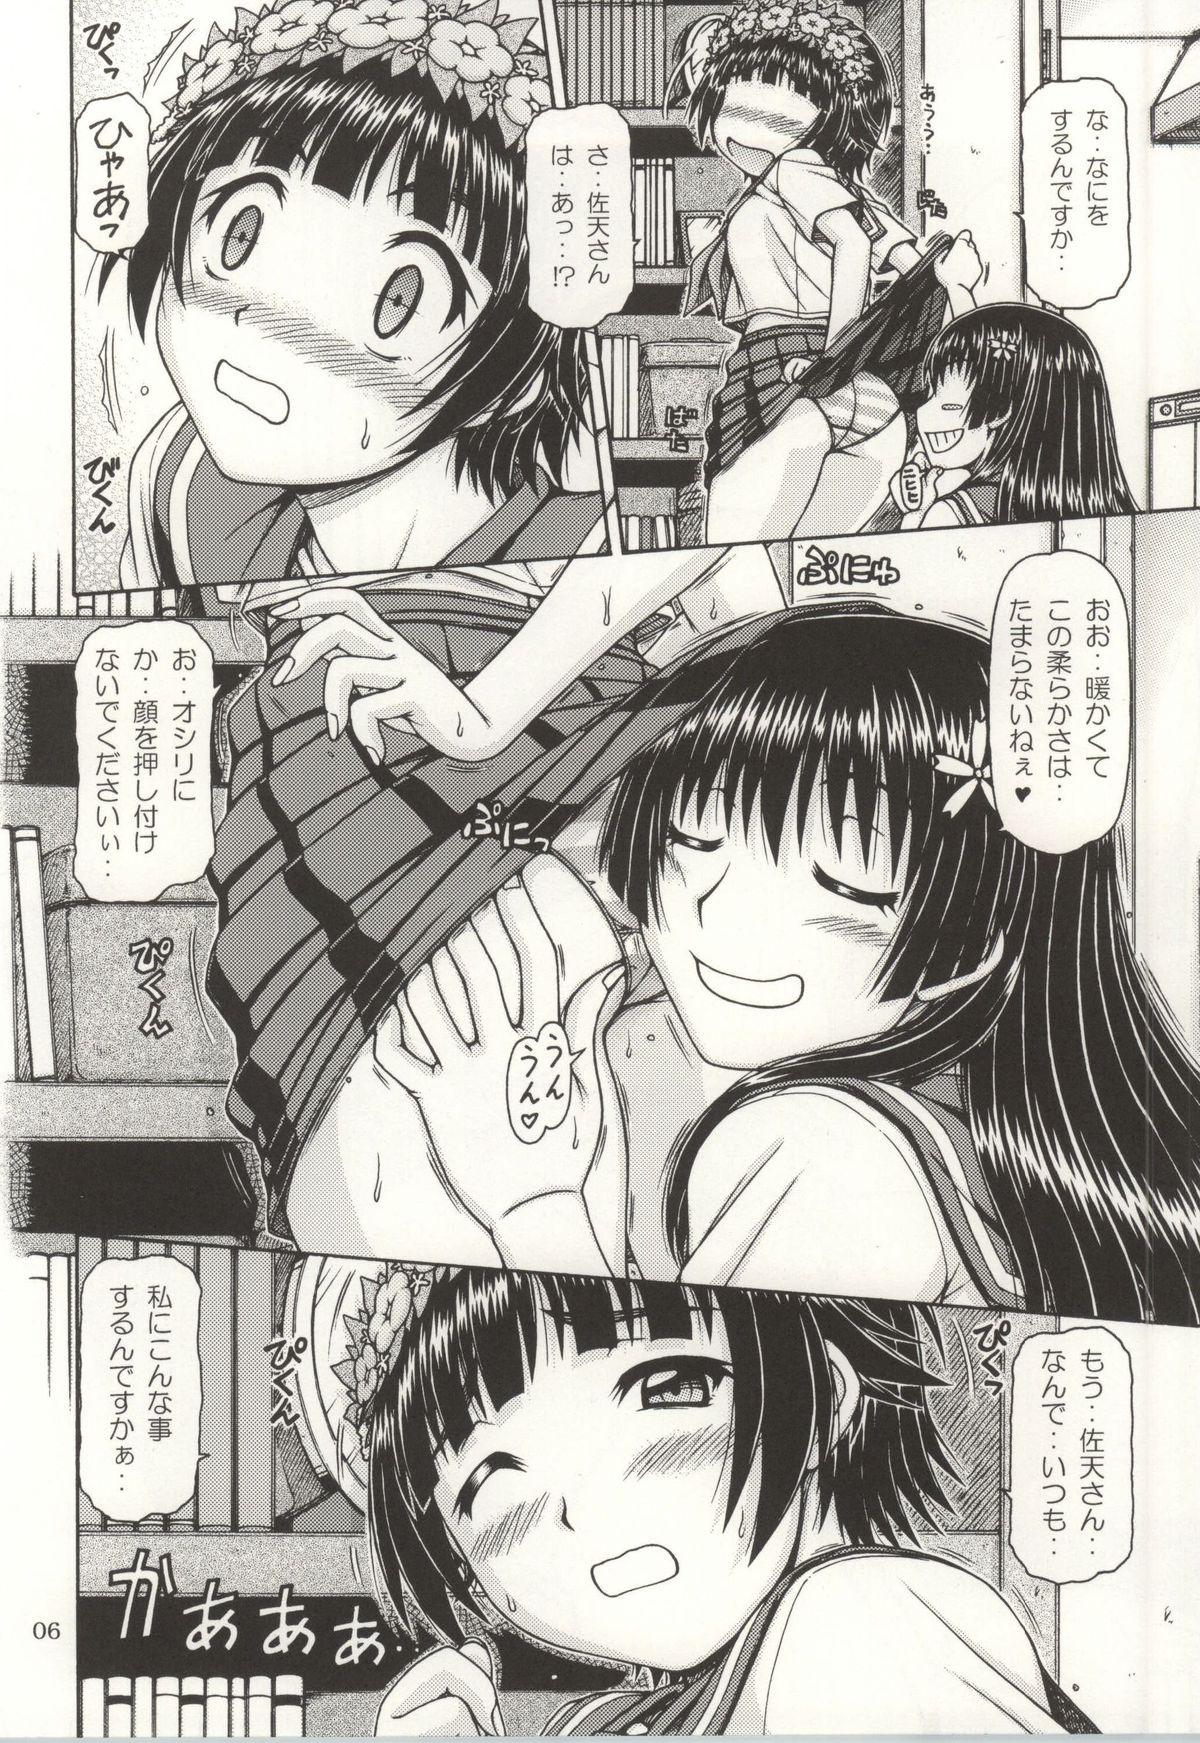 Romance ONE-SEVEN+ Vol.01 - Toaru kagaku no railgun Toaru majutsu no index Uncut - Page 4